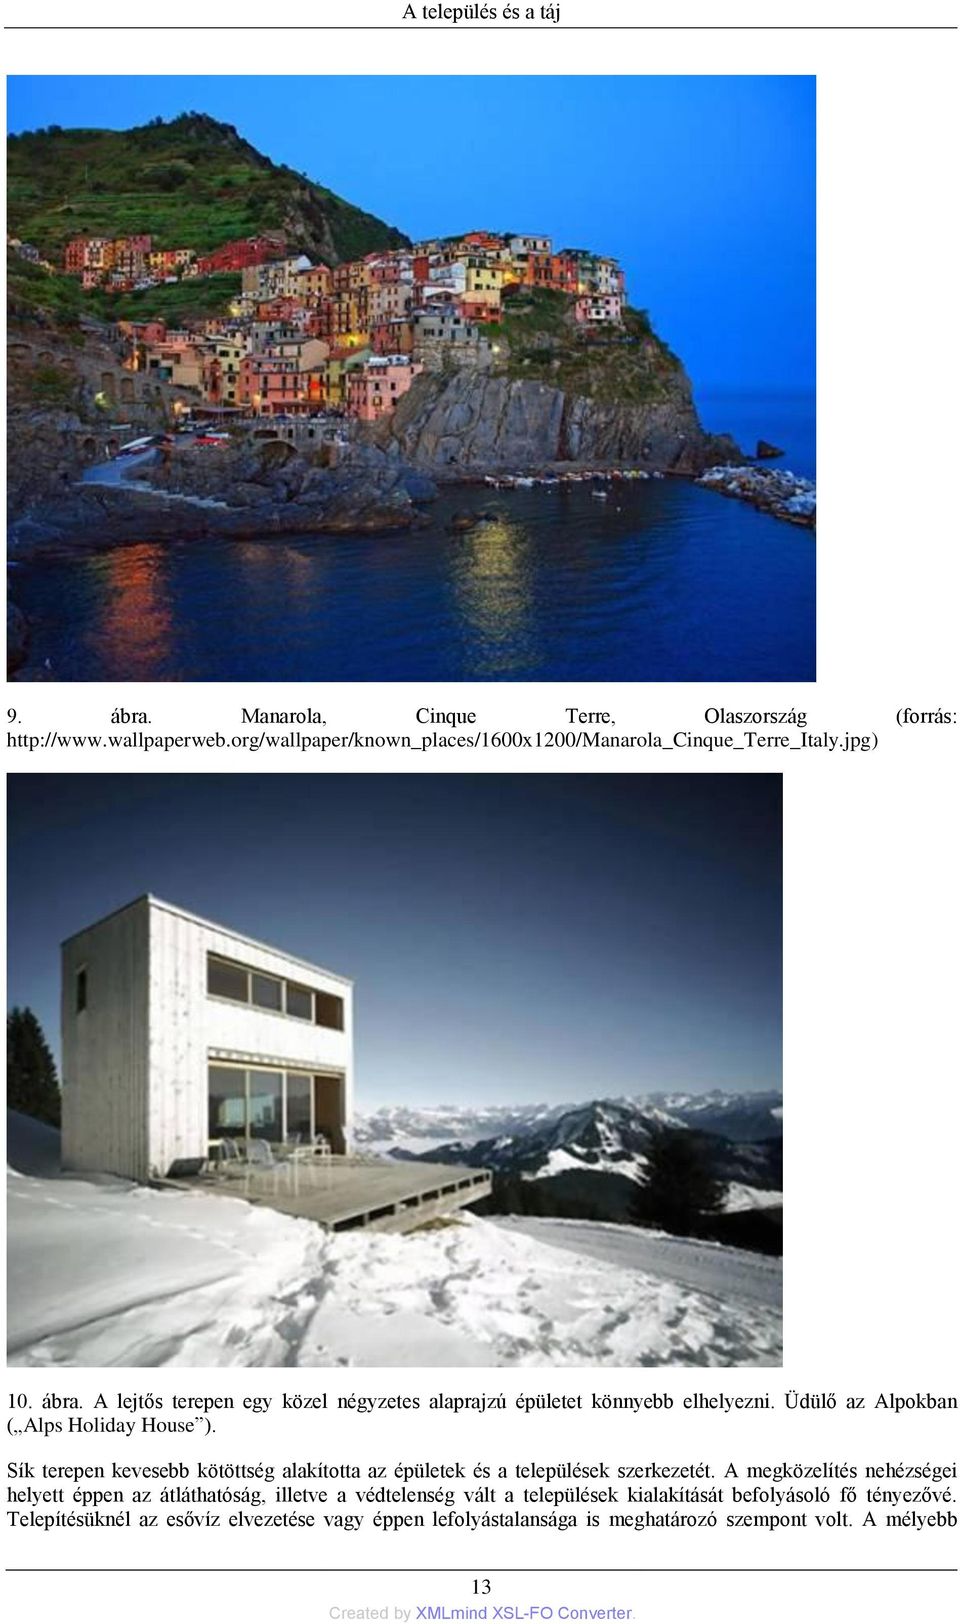 Üdülő az Alpokban ( Alps Holiday House ). Sík terepen kevesebb kötöttség alakította az épületek és a települések szerkezetét.